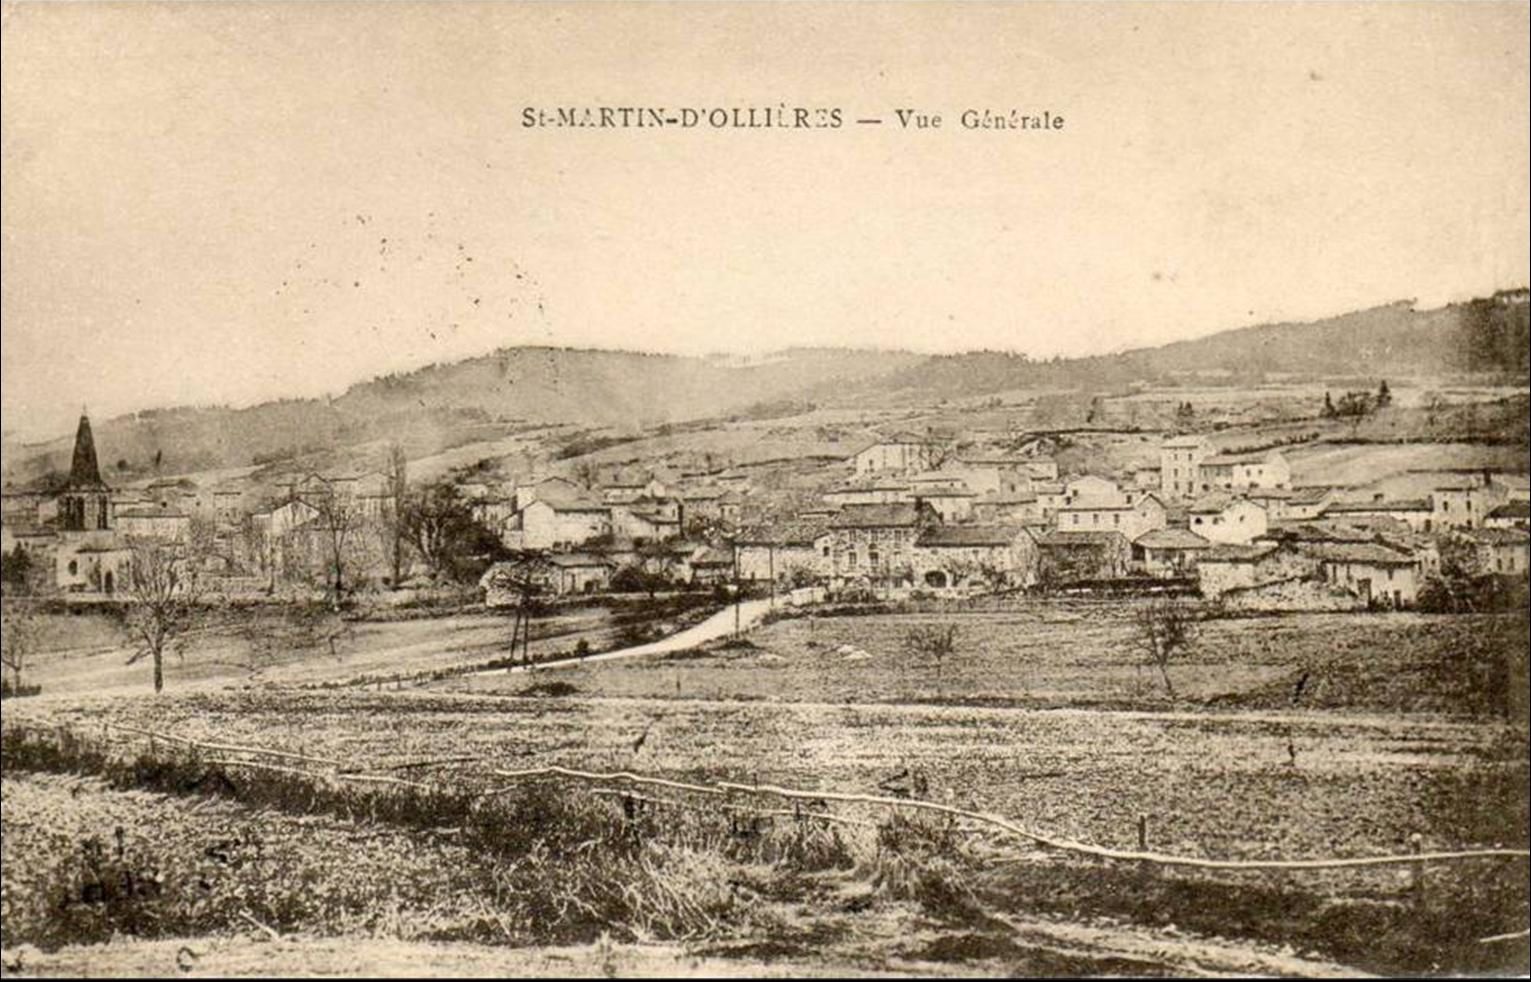 Les villages du puy de dome :St martin d'Ollières